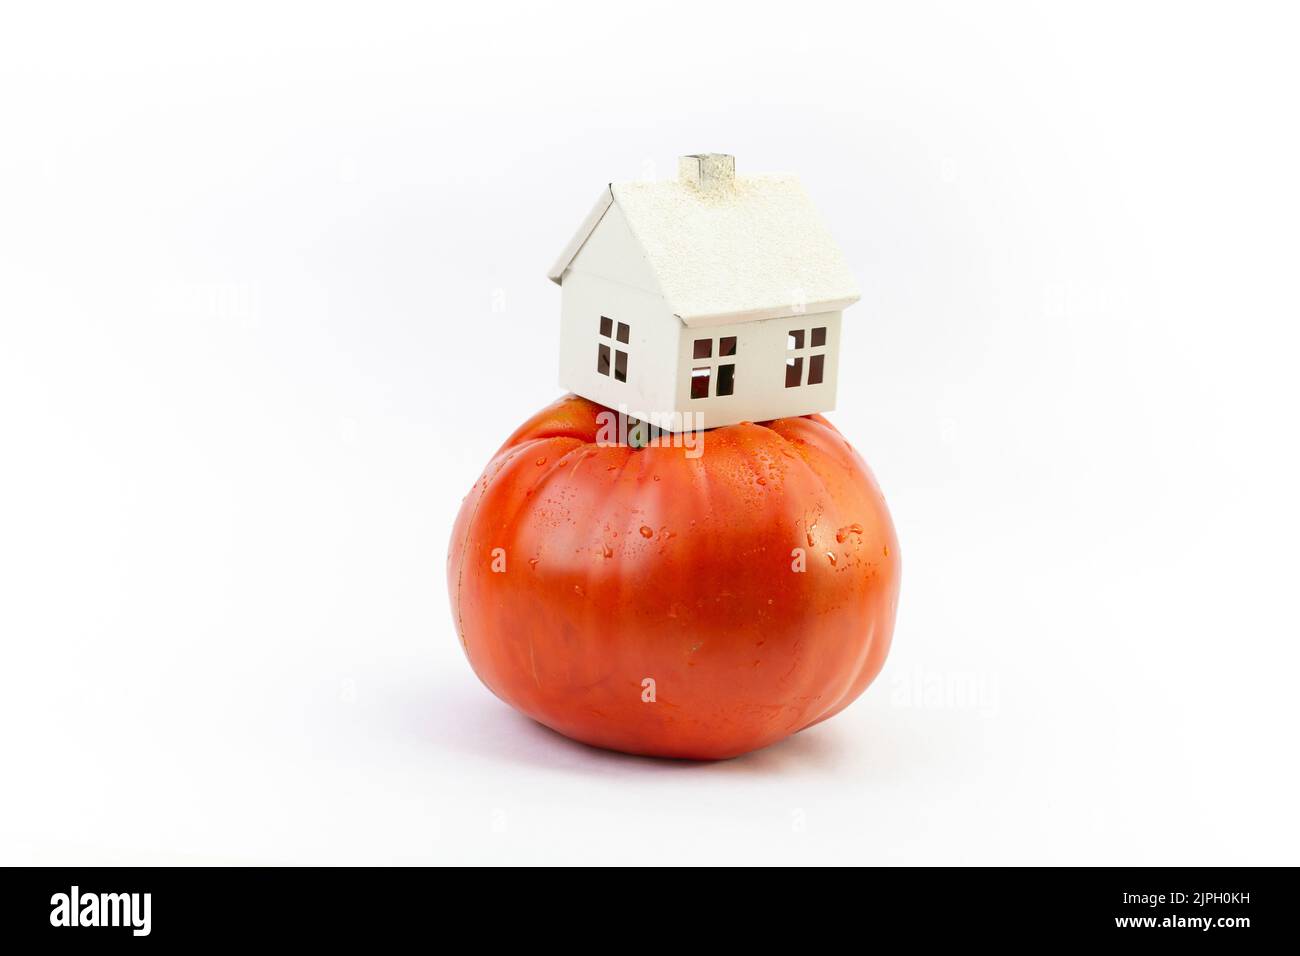 Maison miniature sur une tomate rouge. Concept alimentaire biologique minimal, isolé sur fond blanc. Banque D'Images